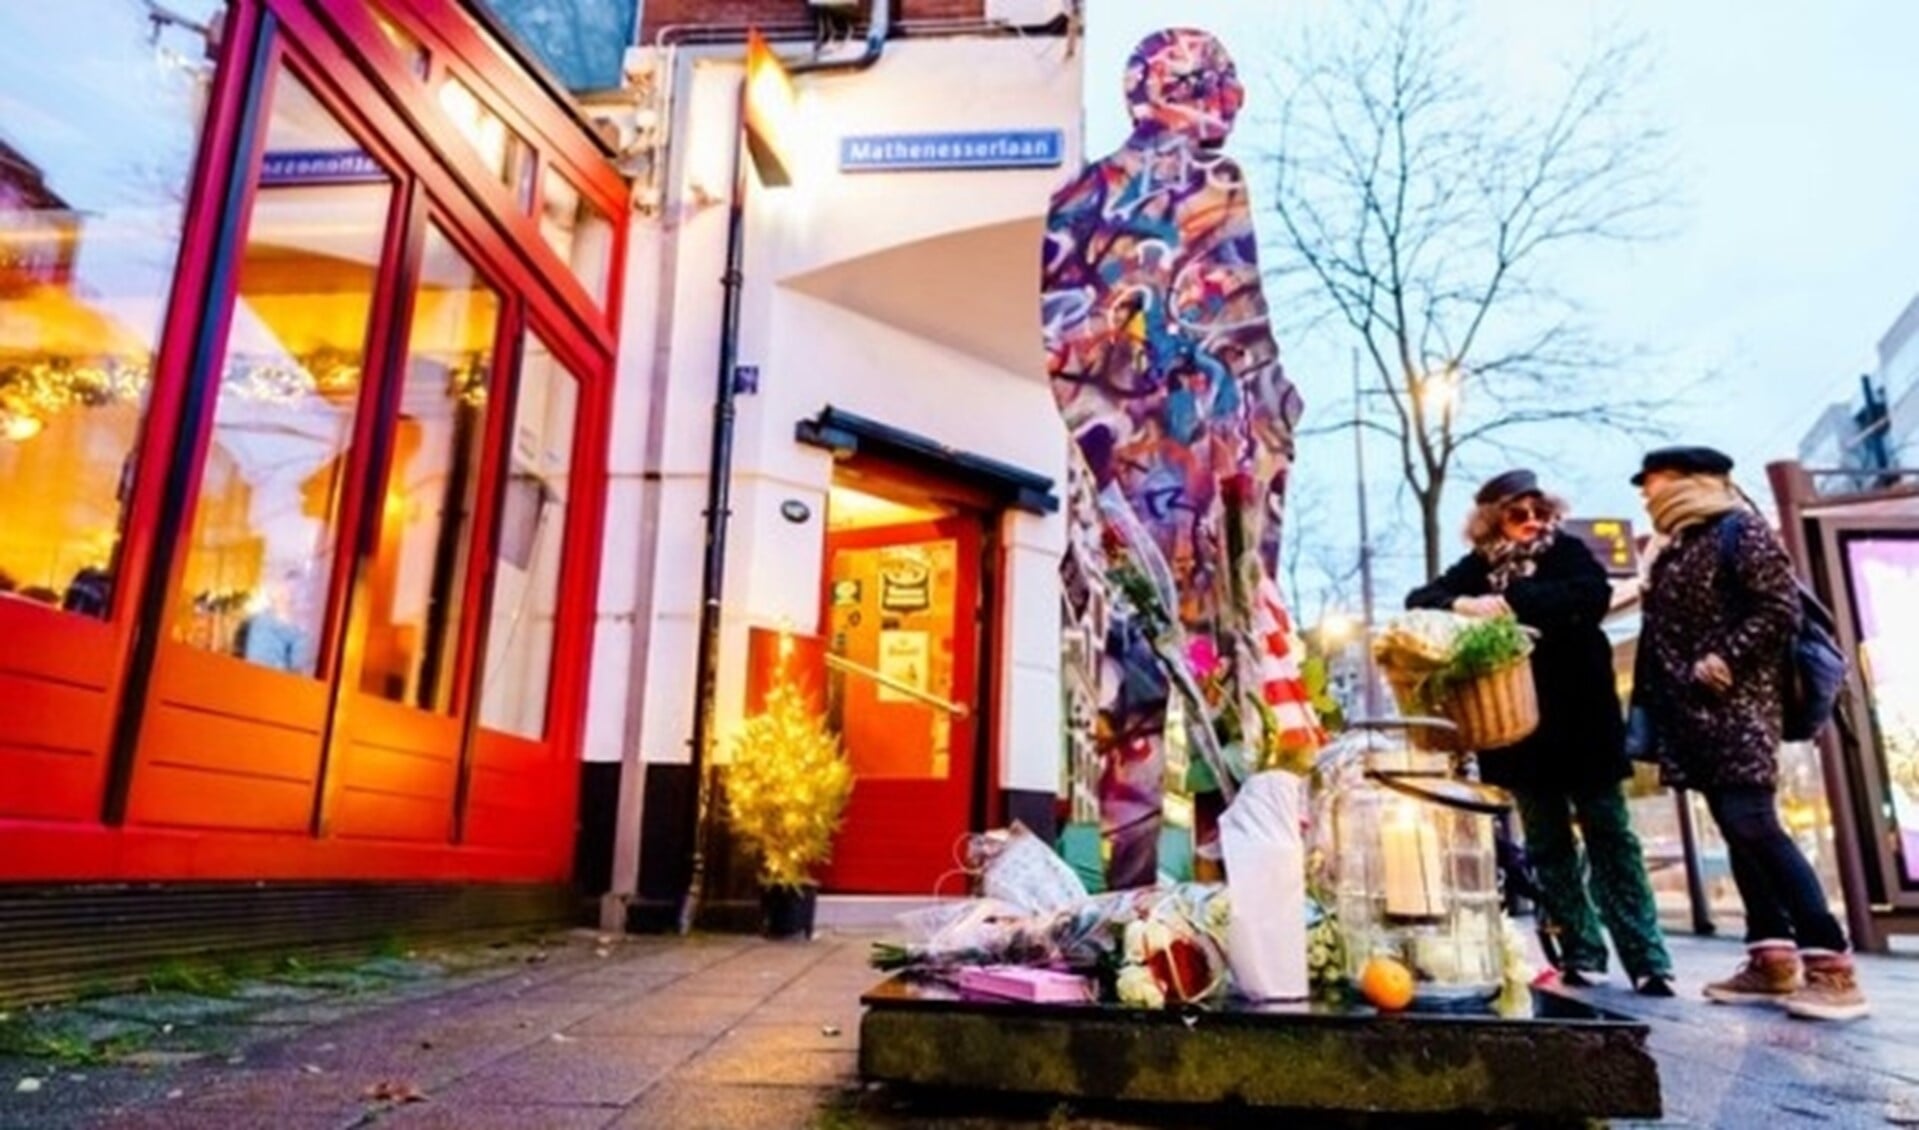 Sinds donderdag laten mensen bloemen achter bij het beeld van Deelder bij café Ari.